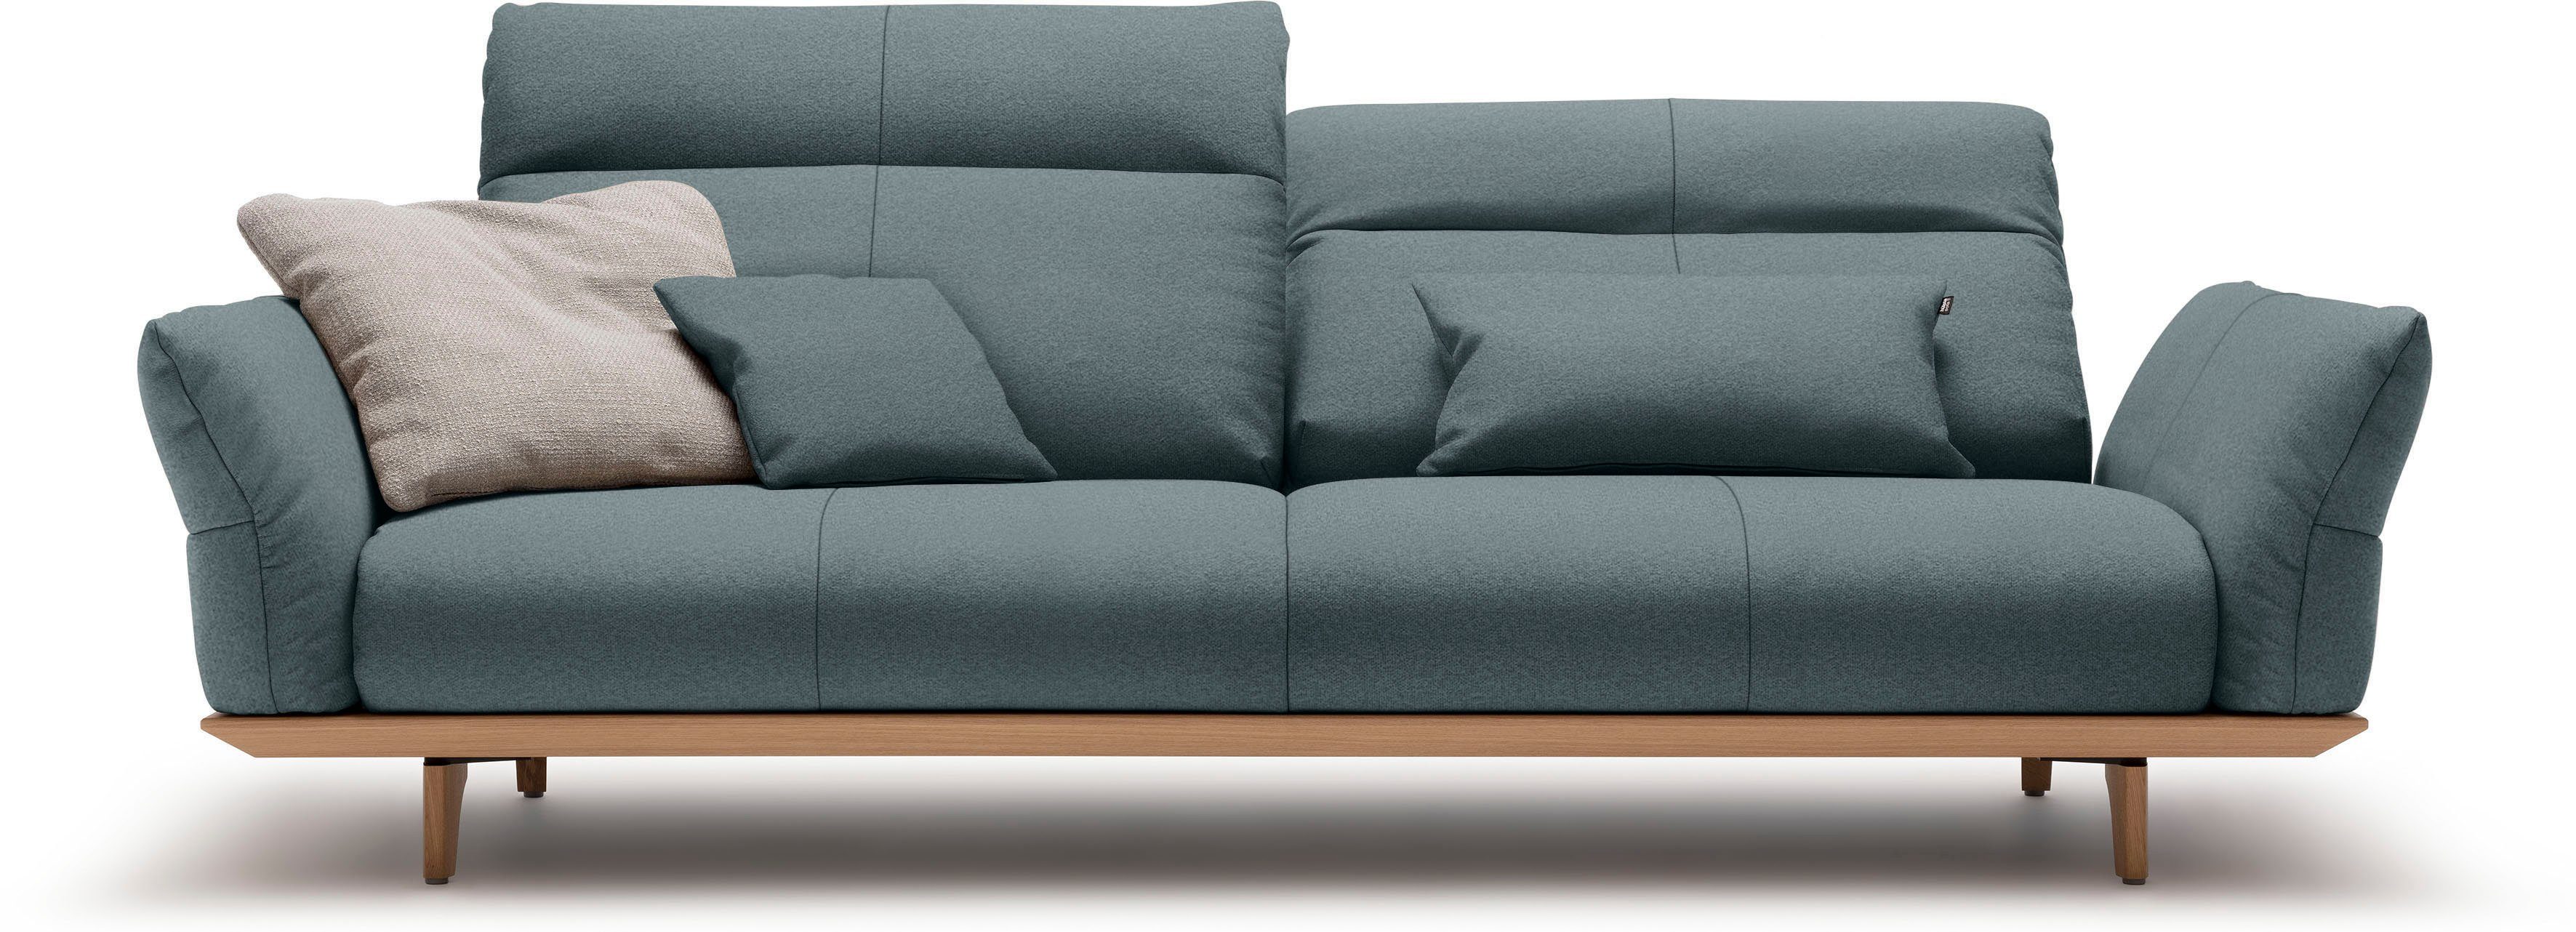 huelsta sofa 3,5-zitsbank hs.460 onderstel in eiken, poten in natuurlijk eiken, breedte 228 cm blauw